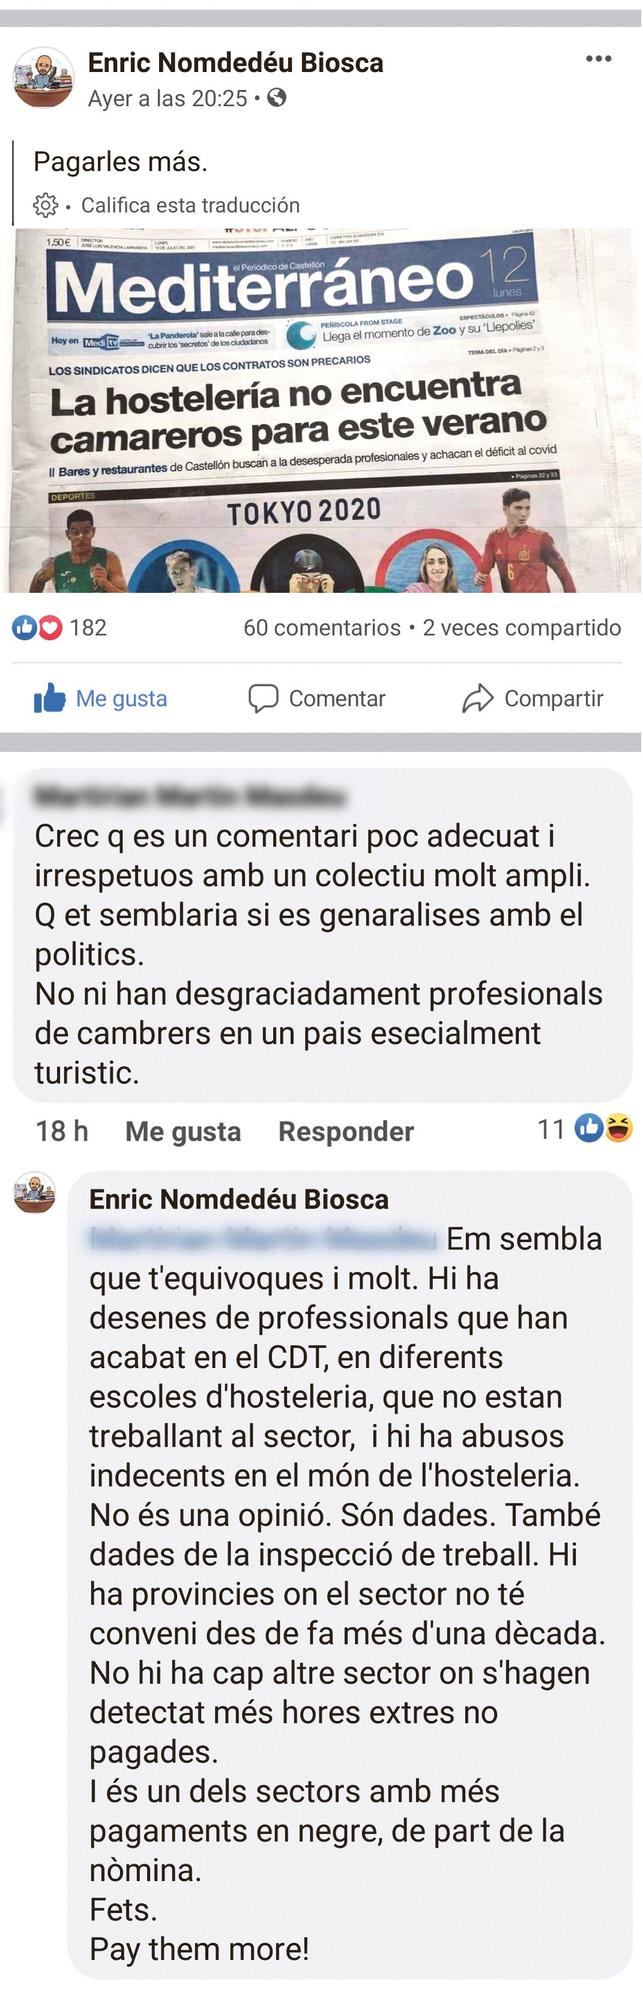 Captura de la publicación de Nomdedéu y de los comentarios.